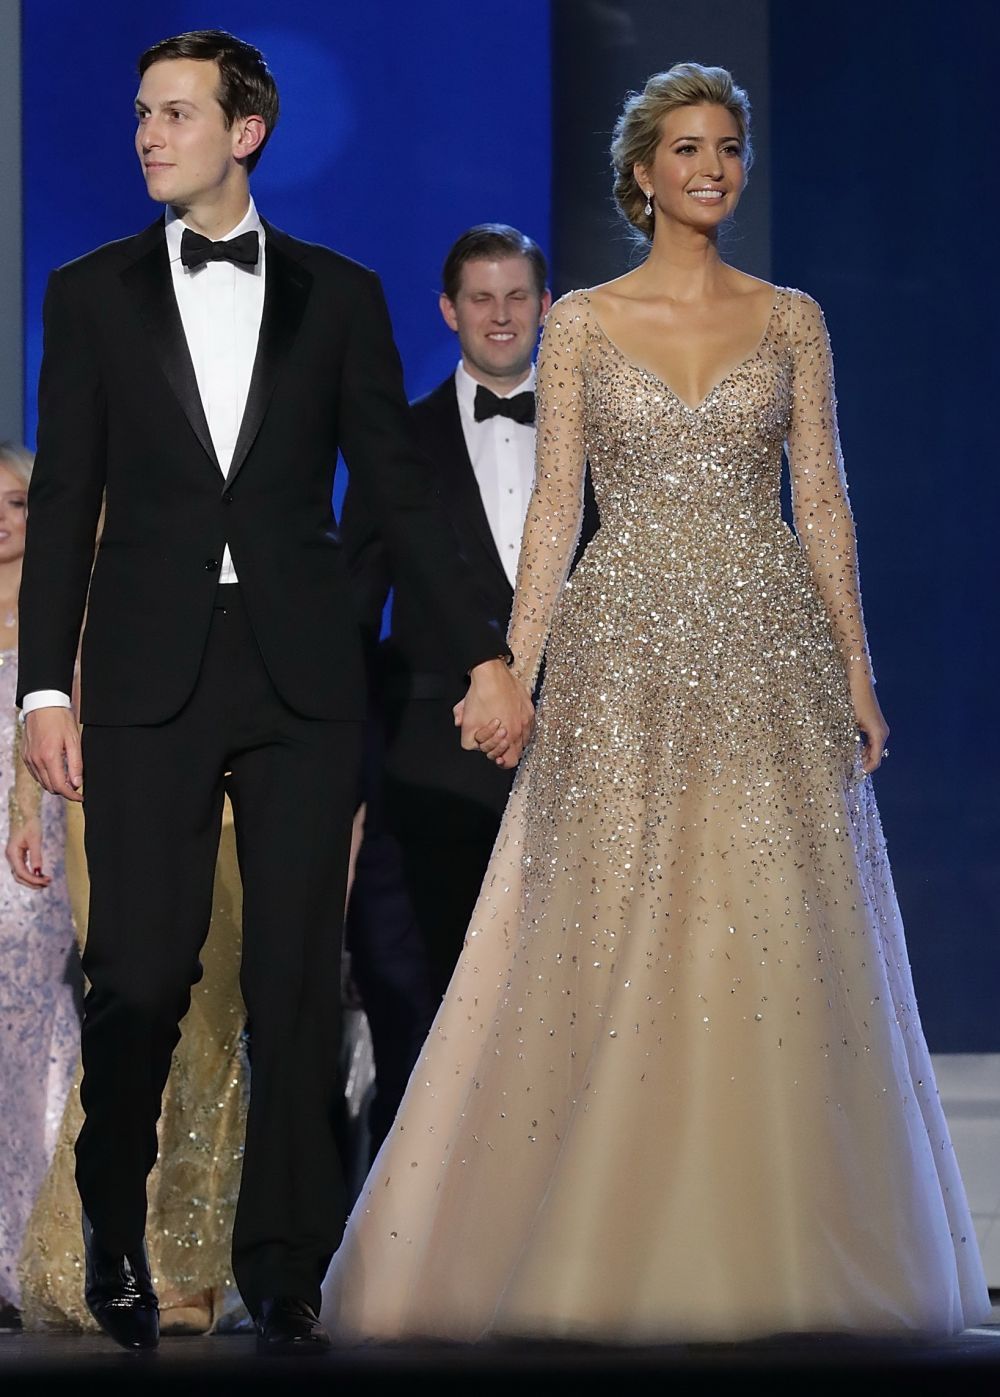 Complet diferita. Ivanka Trump, pozata dupa ce a uimit in rochia de basm de la balul de investire a tatalui ei